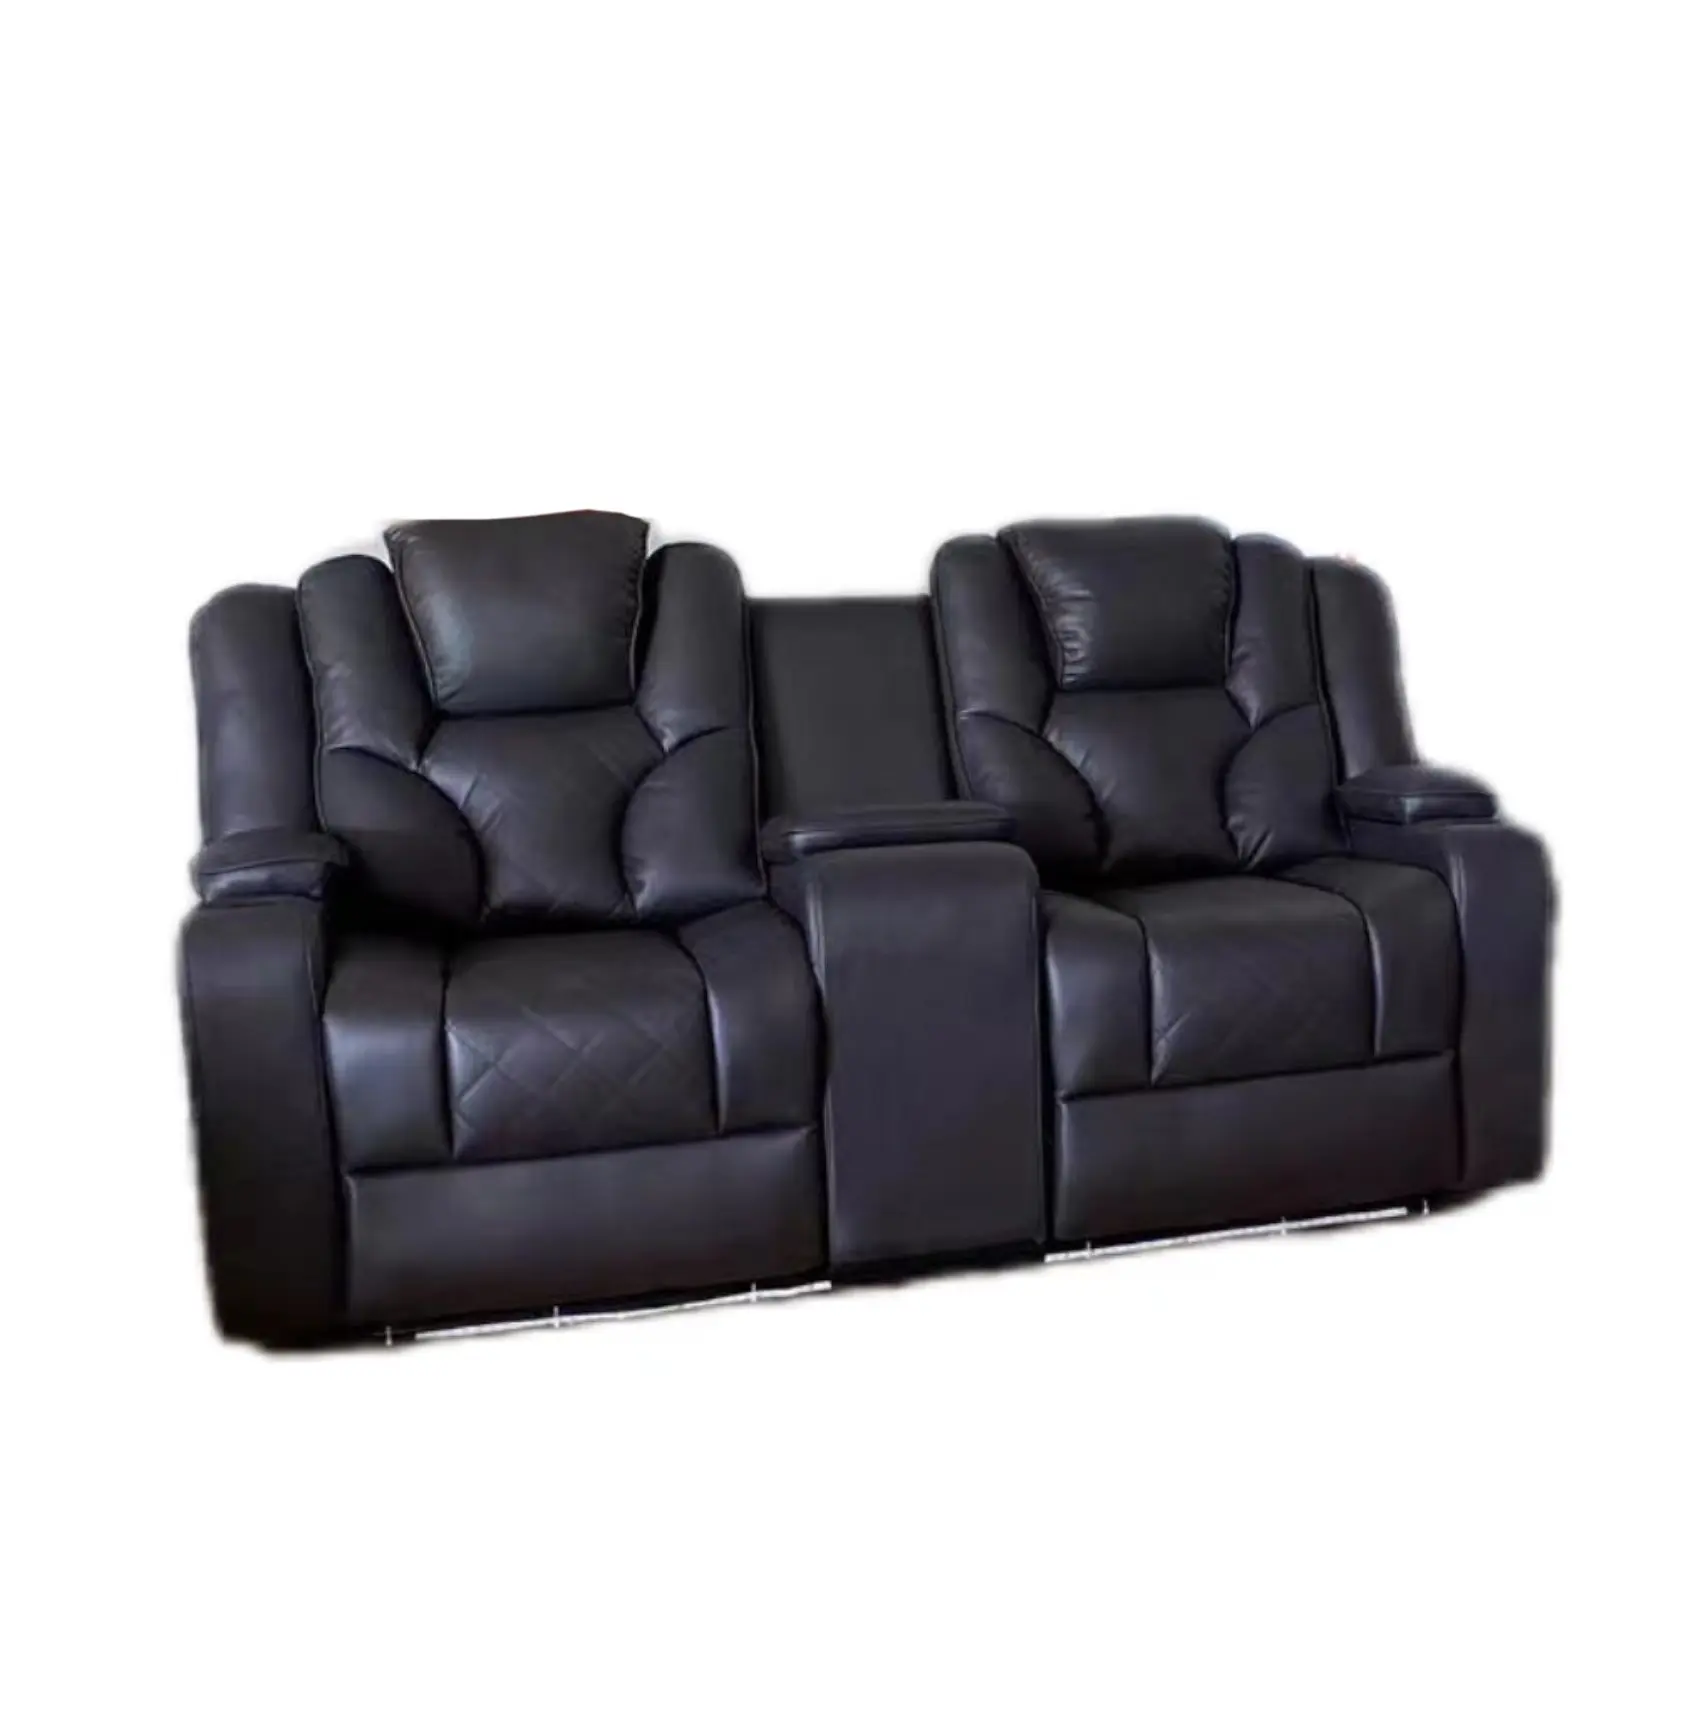 Divano reclinabile elettrico il miglior prezzo accessibile stile europeo divano reclinabile in vera pelle